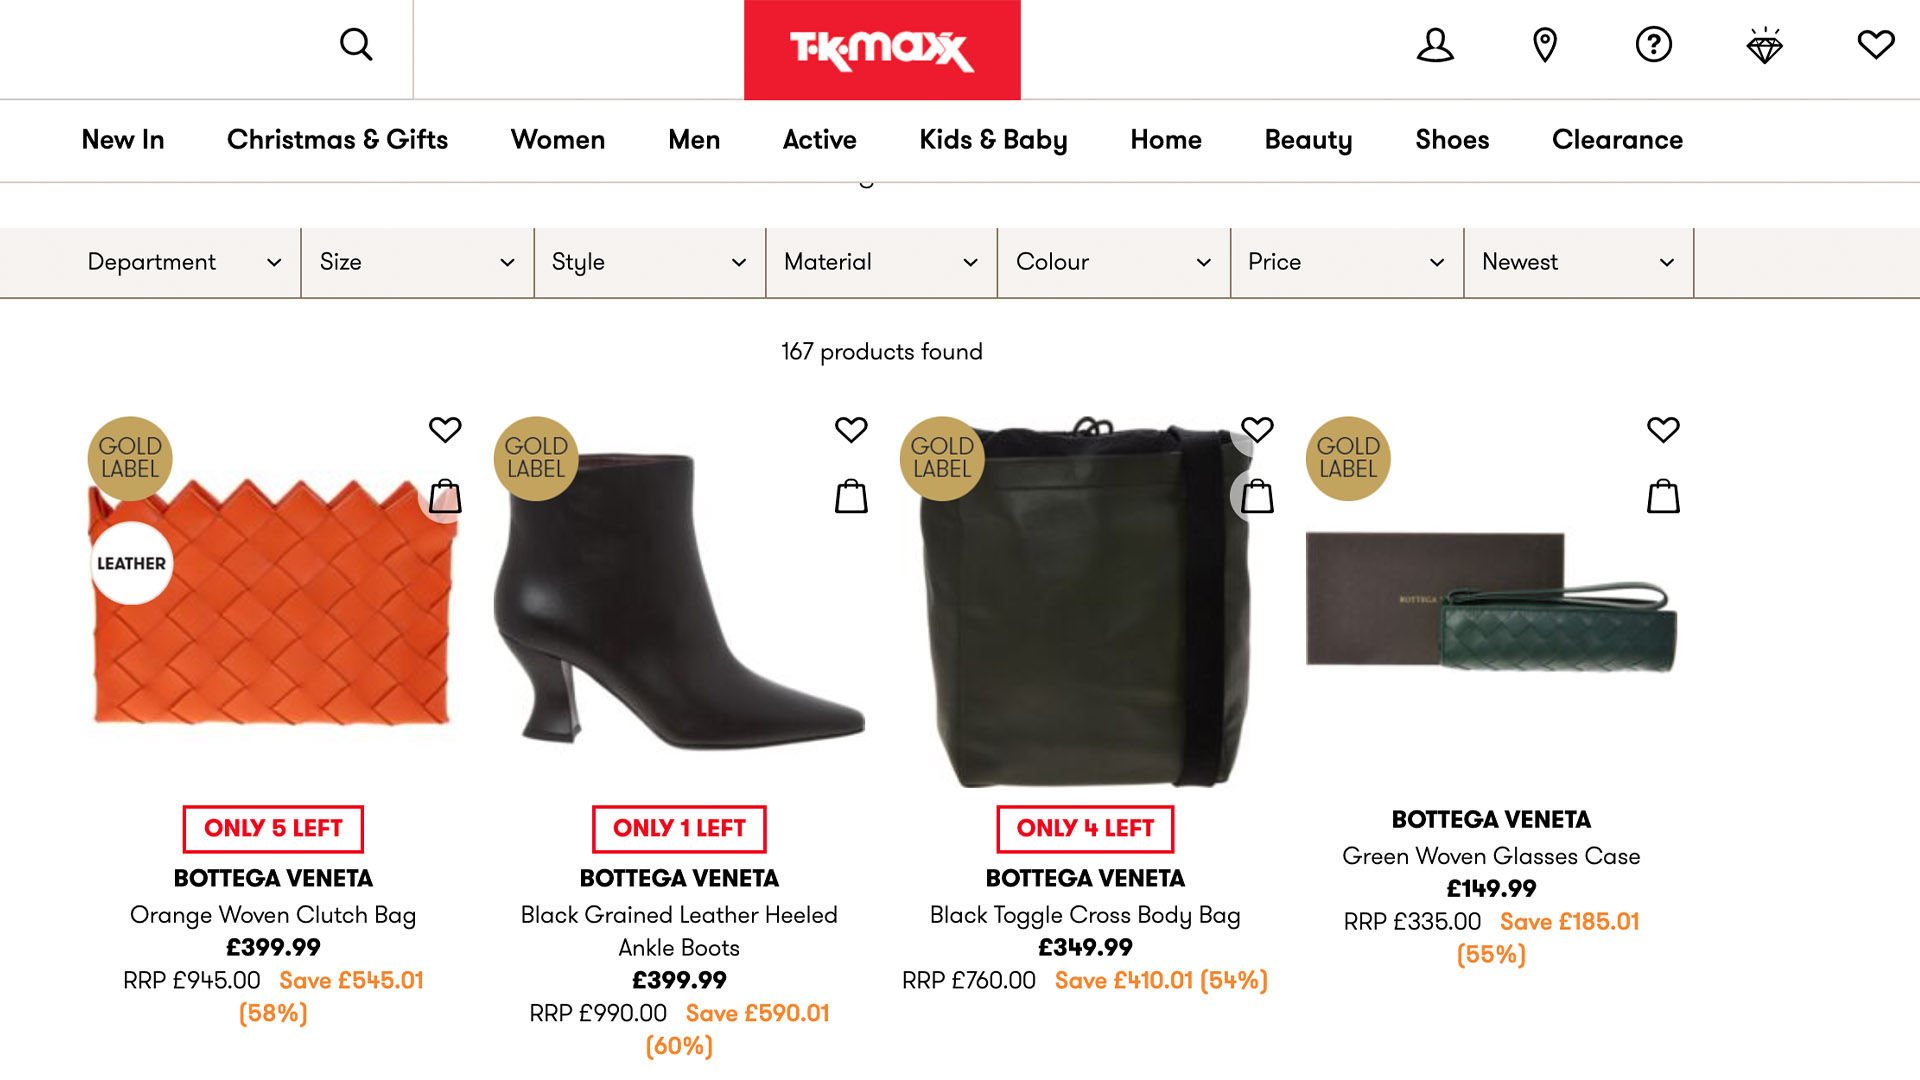 大量 Bottega Veneta 打折商品出现在英国电商网站TK Maxx上，官方发文澄清